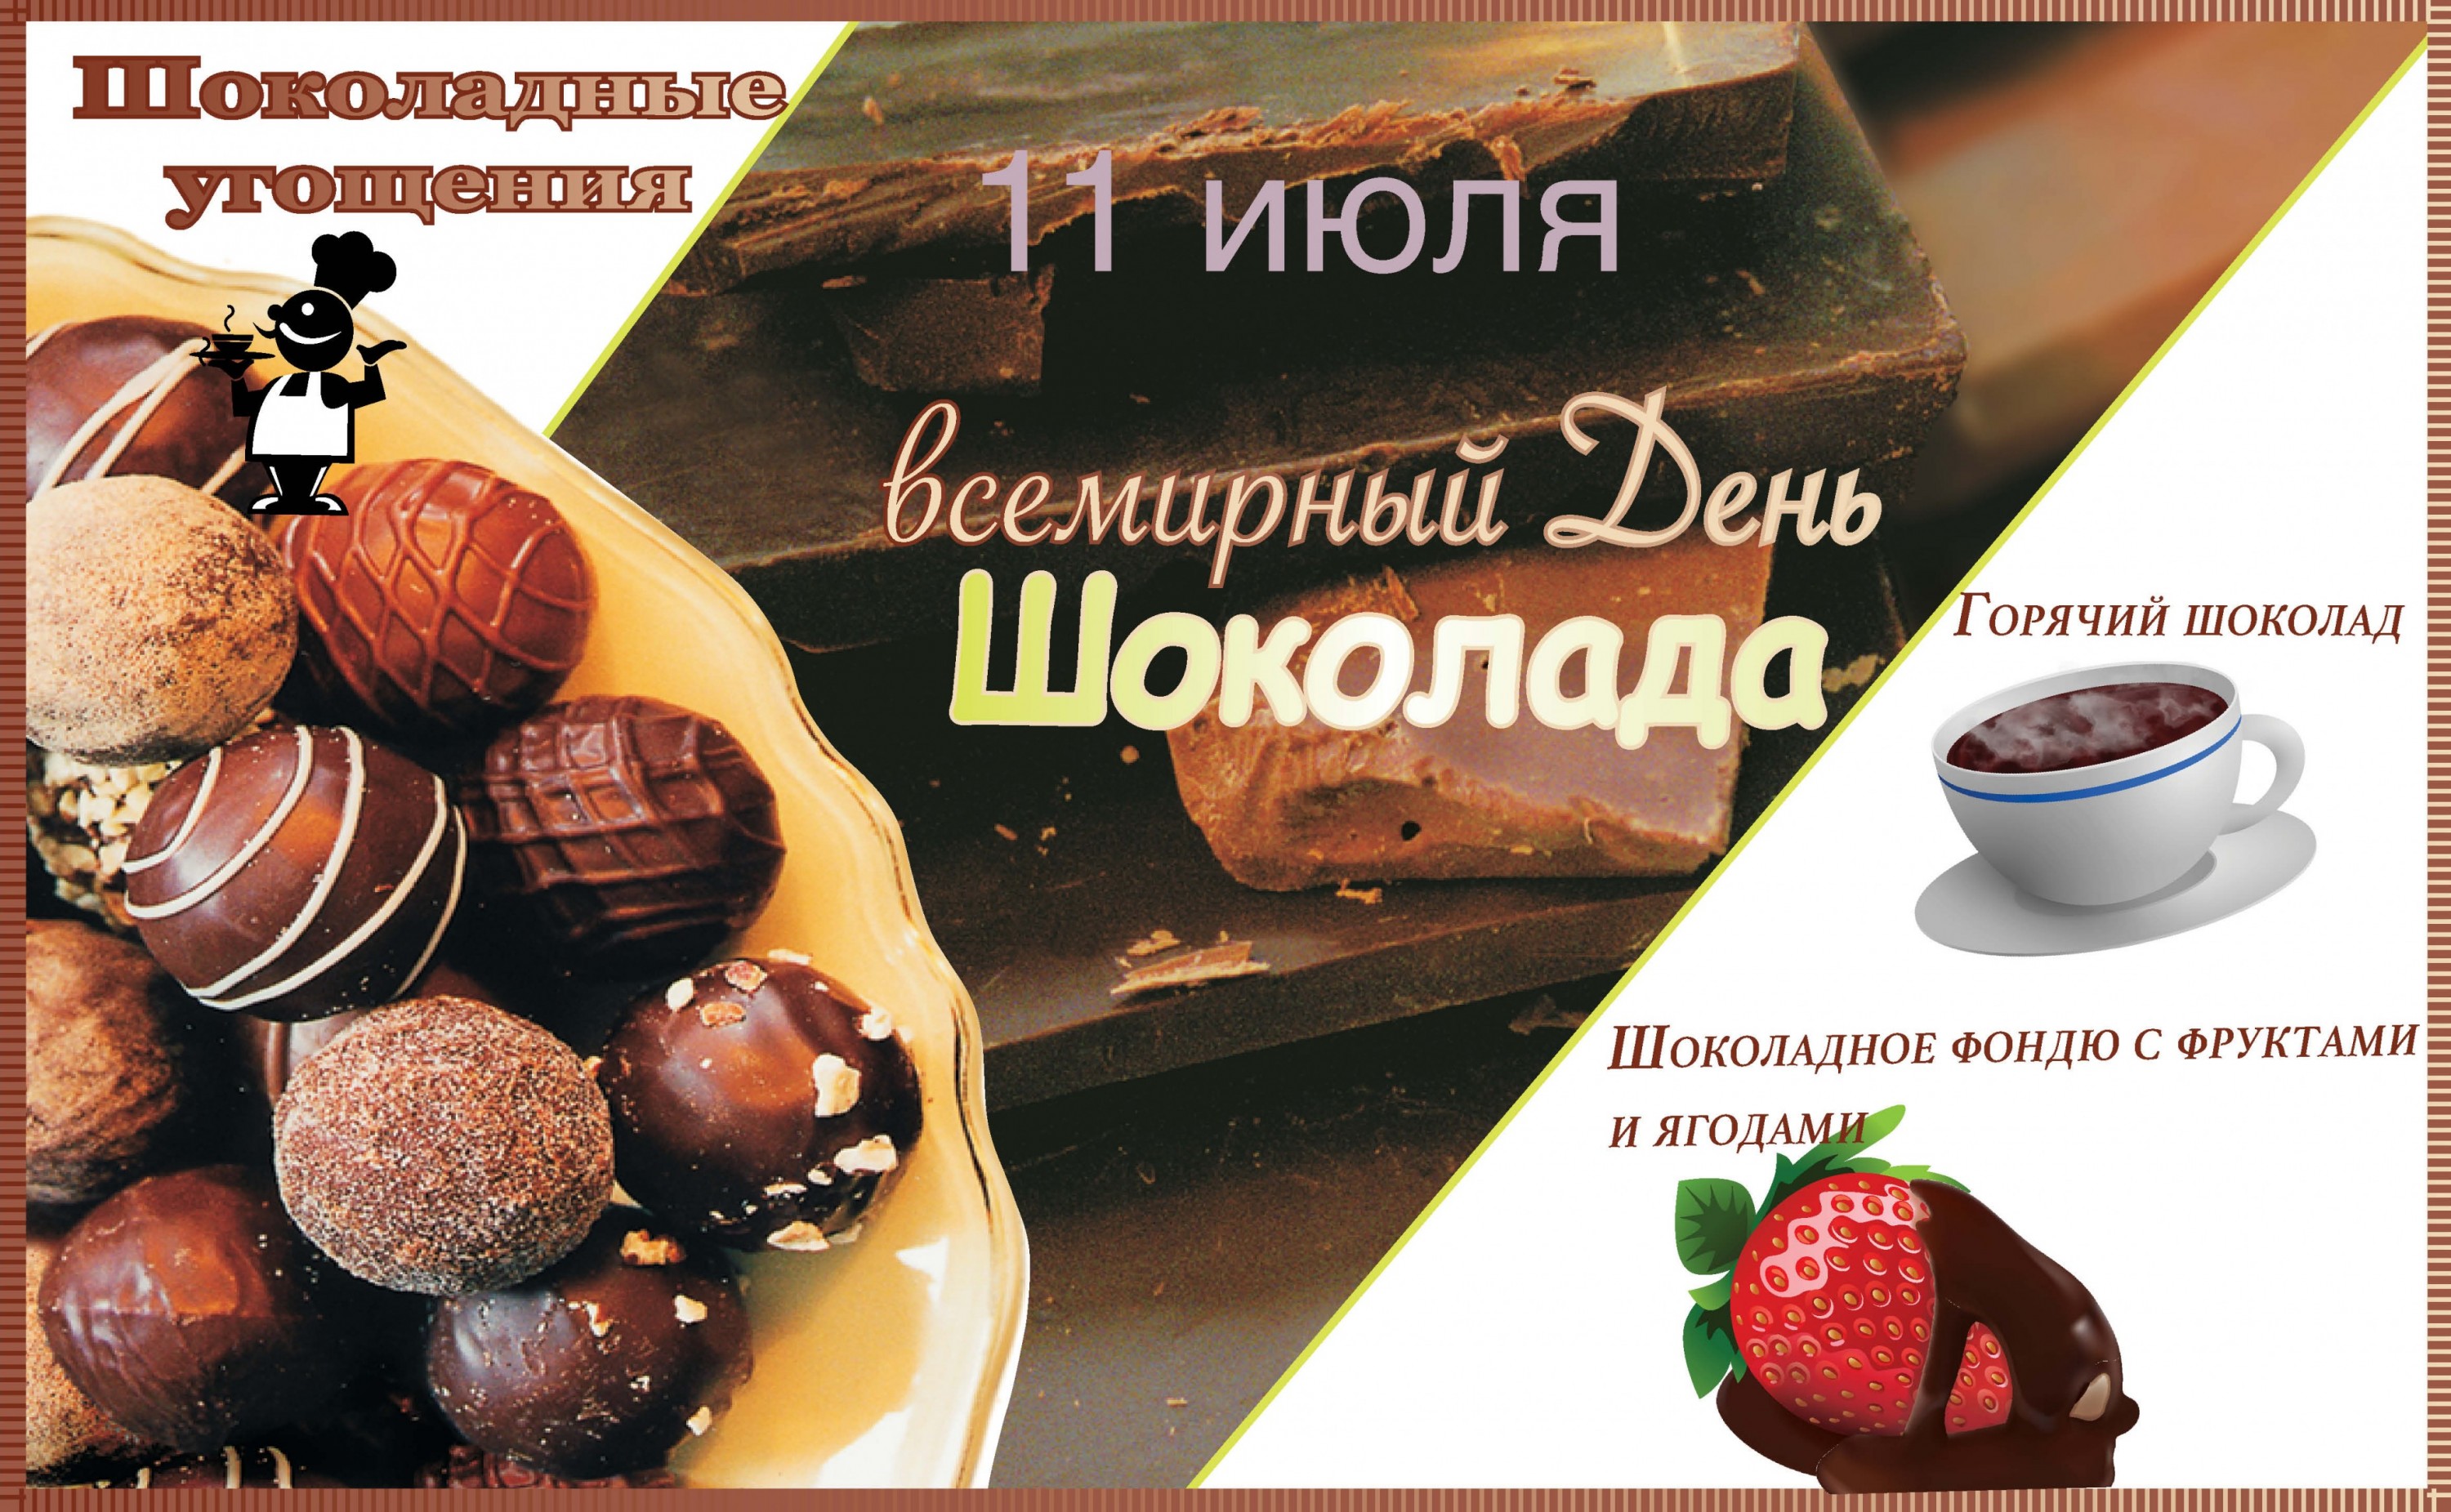 Всемирный день шоколада 11 июля